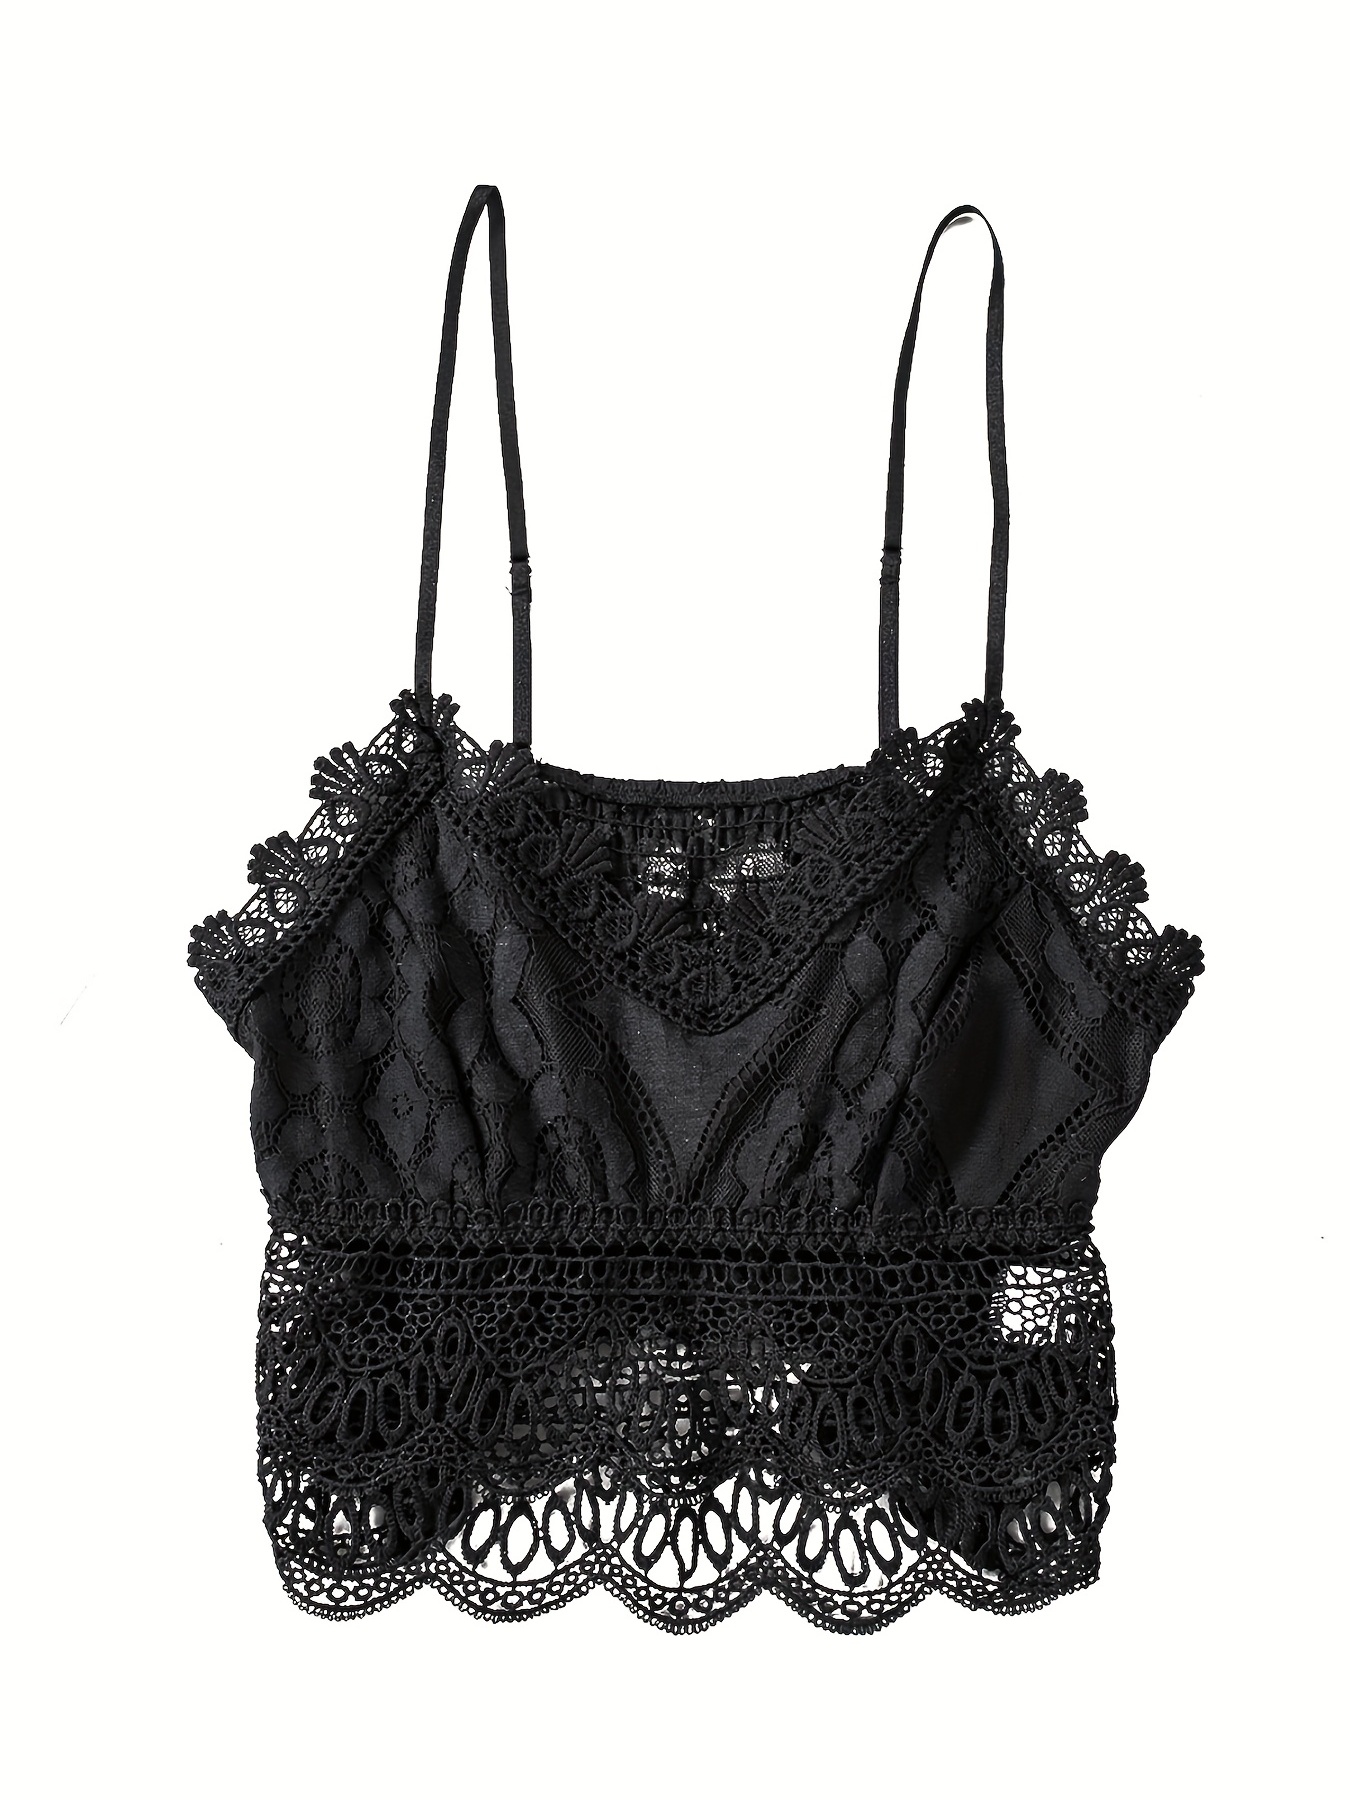 Black Lace Bralette, bralette crop top, Women's Clothing, Lingerie, Size  S/M/L